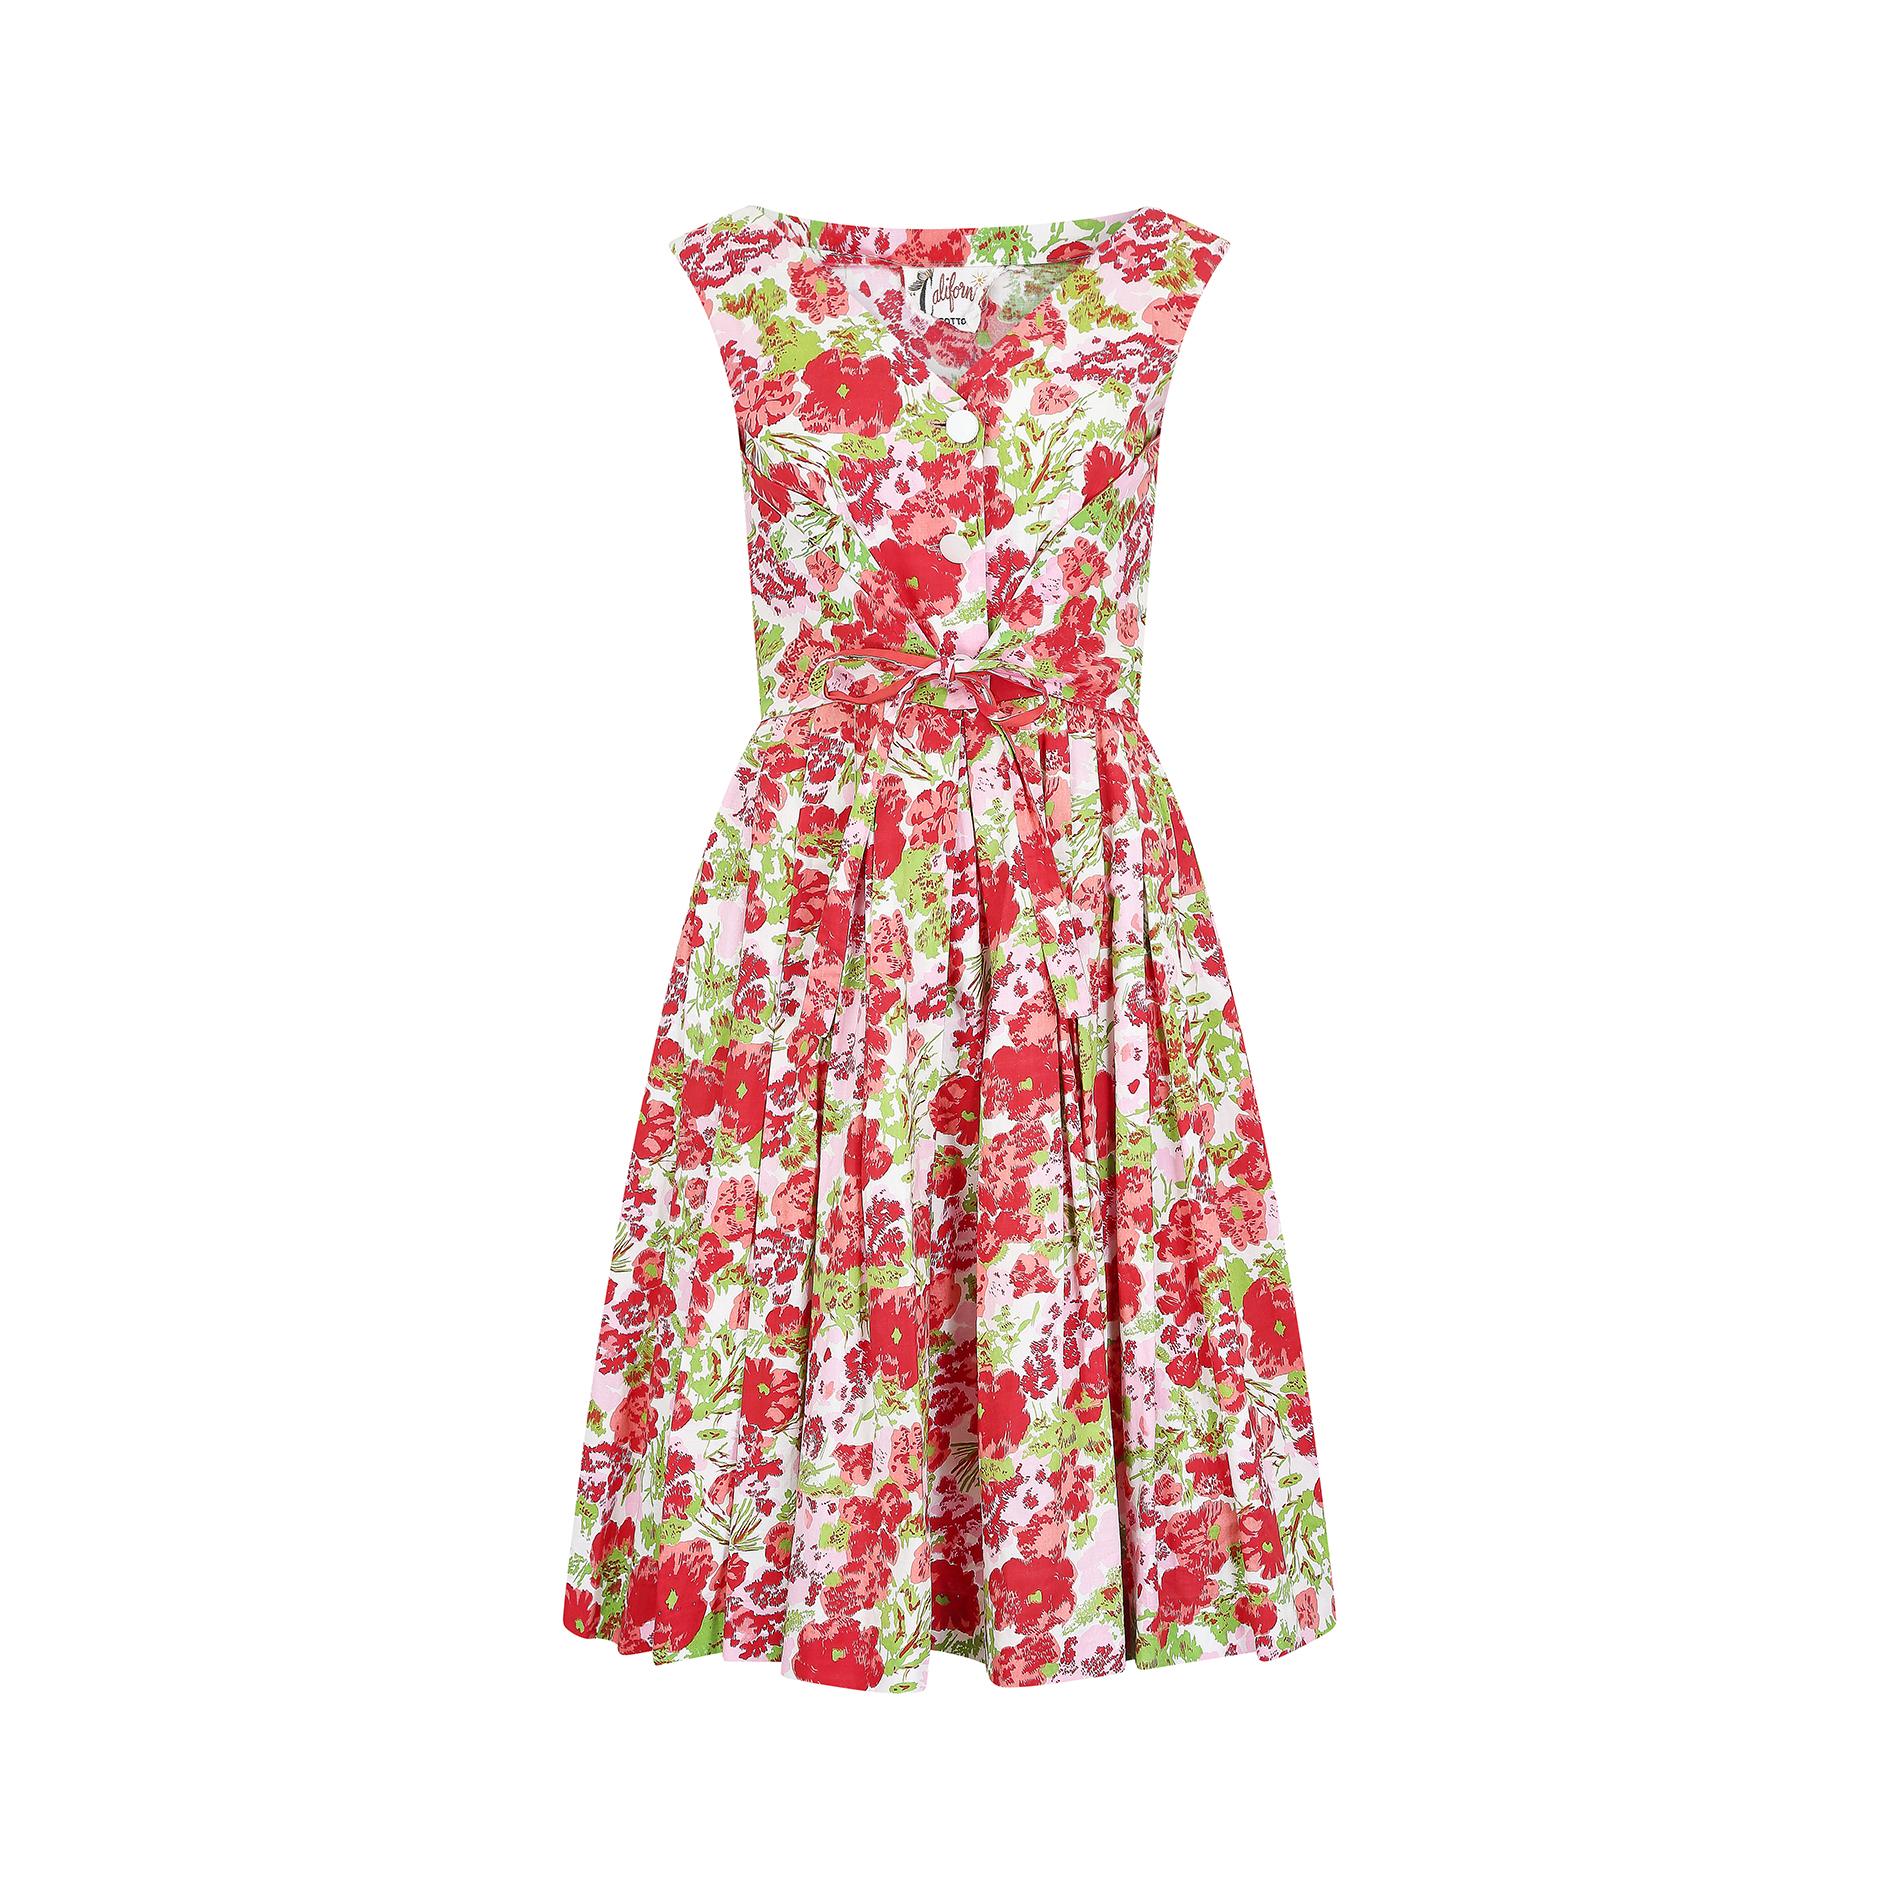 Der auffällige Druck auf diesem Kleid aus den späten 1950er Jahren von California Cottons ist fantastisch und perfekt für den Sommer. Mit seinen roten, rosafarbenen und grünen Mohnblumen auf weißem Grund erinnert der Stoff an die kühnen floralen